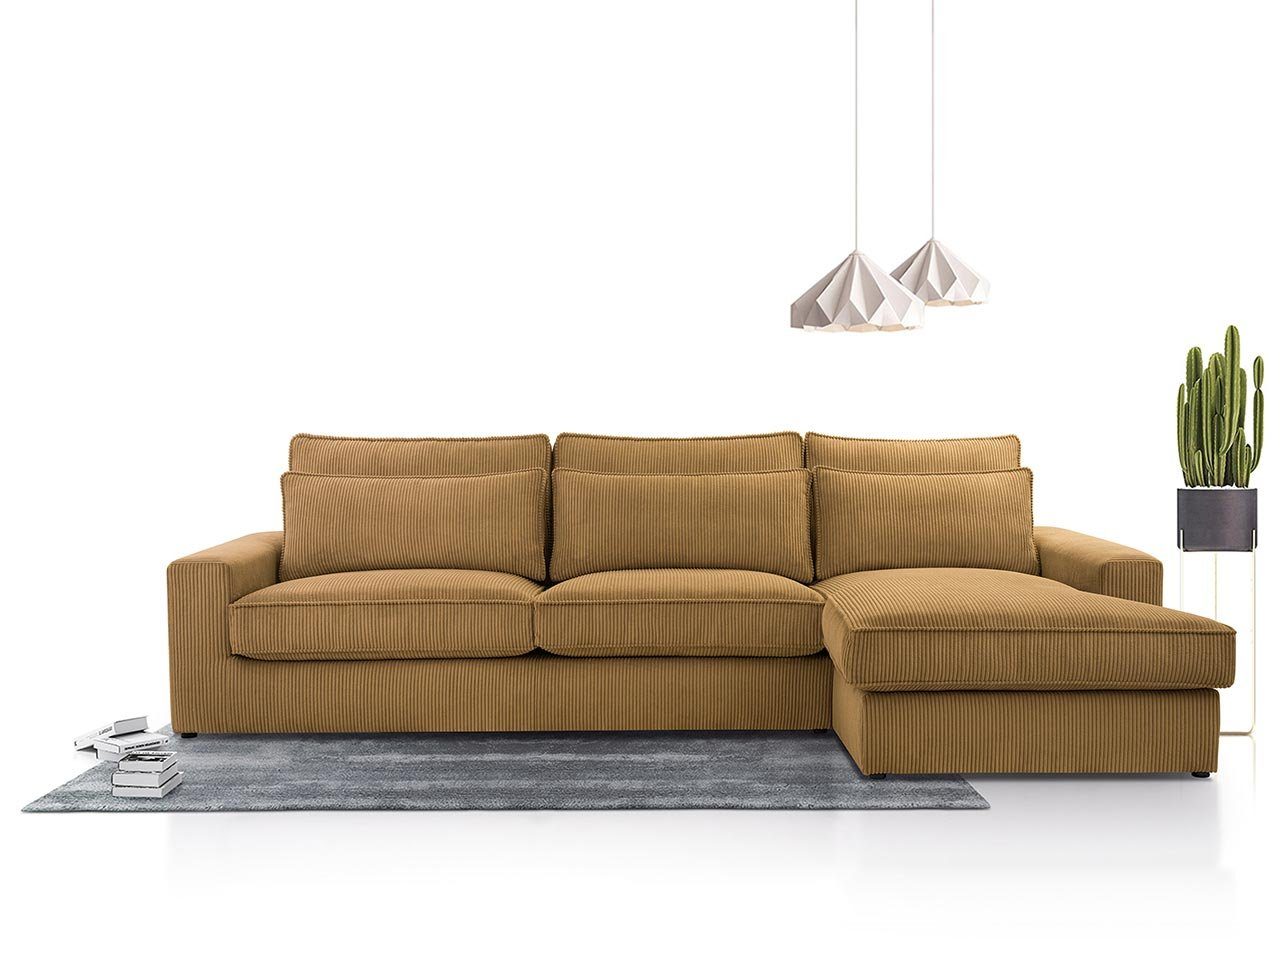 MKS MÖBEL Ecksofa CANES, L - Form Couch, mit lose Kissen, modern Ecksofa Orange Lincoln